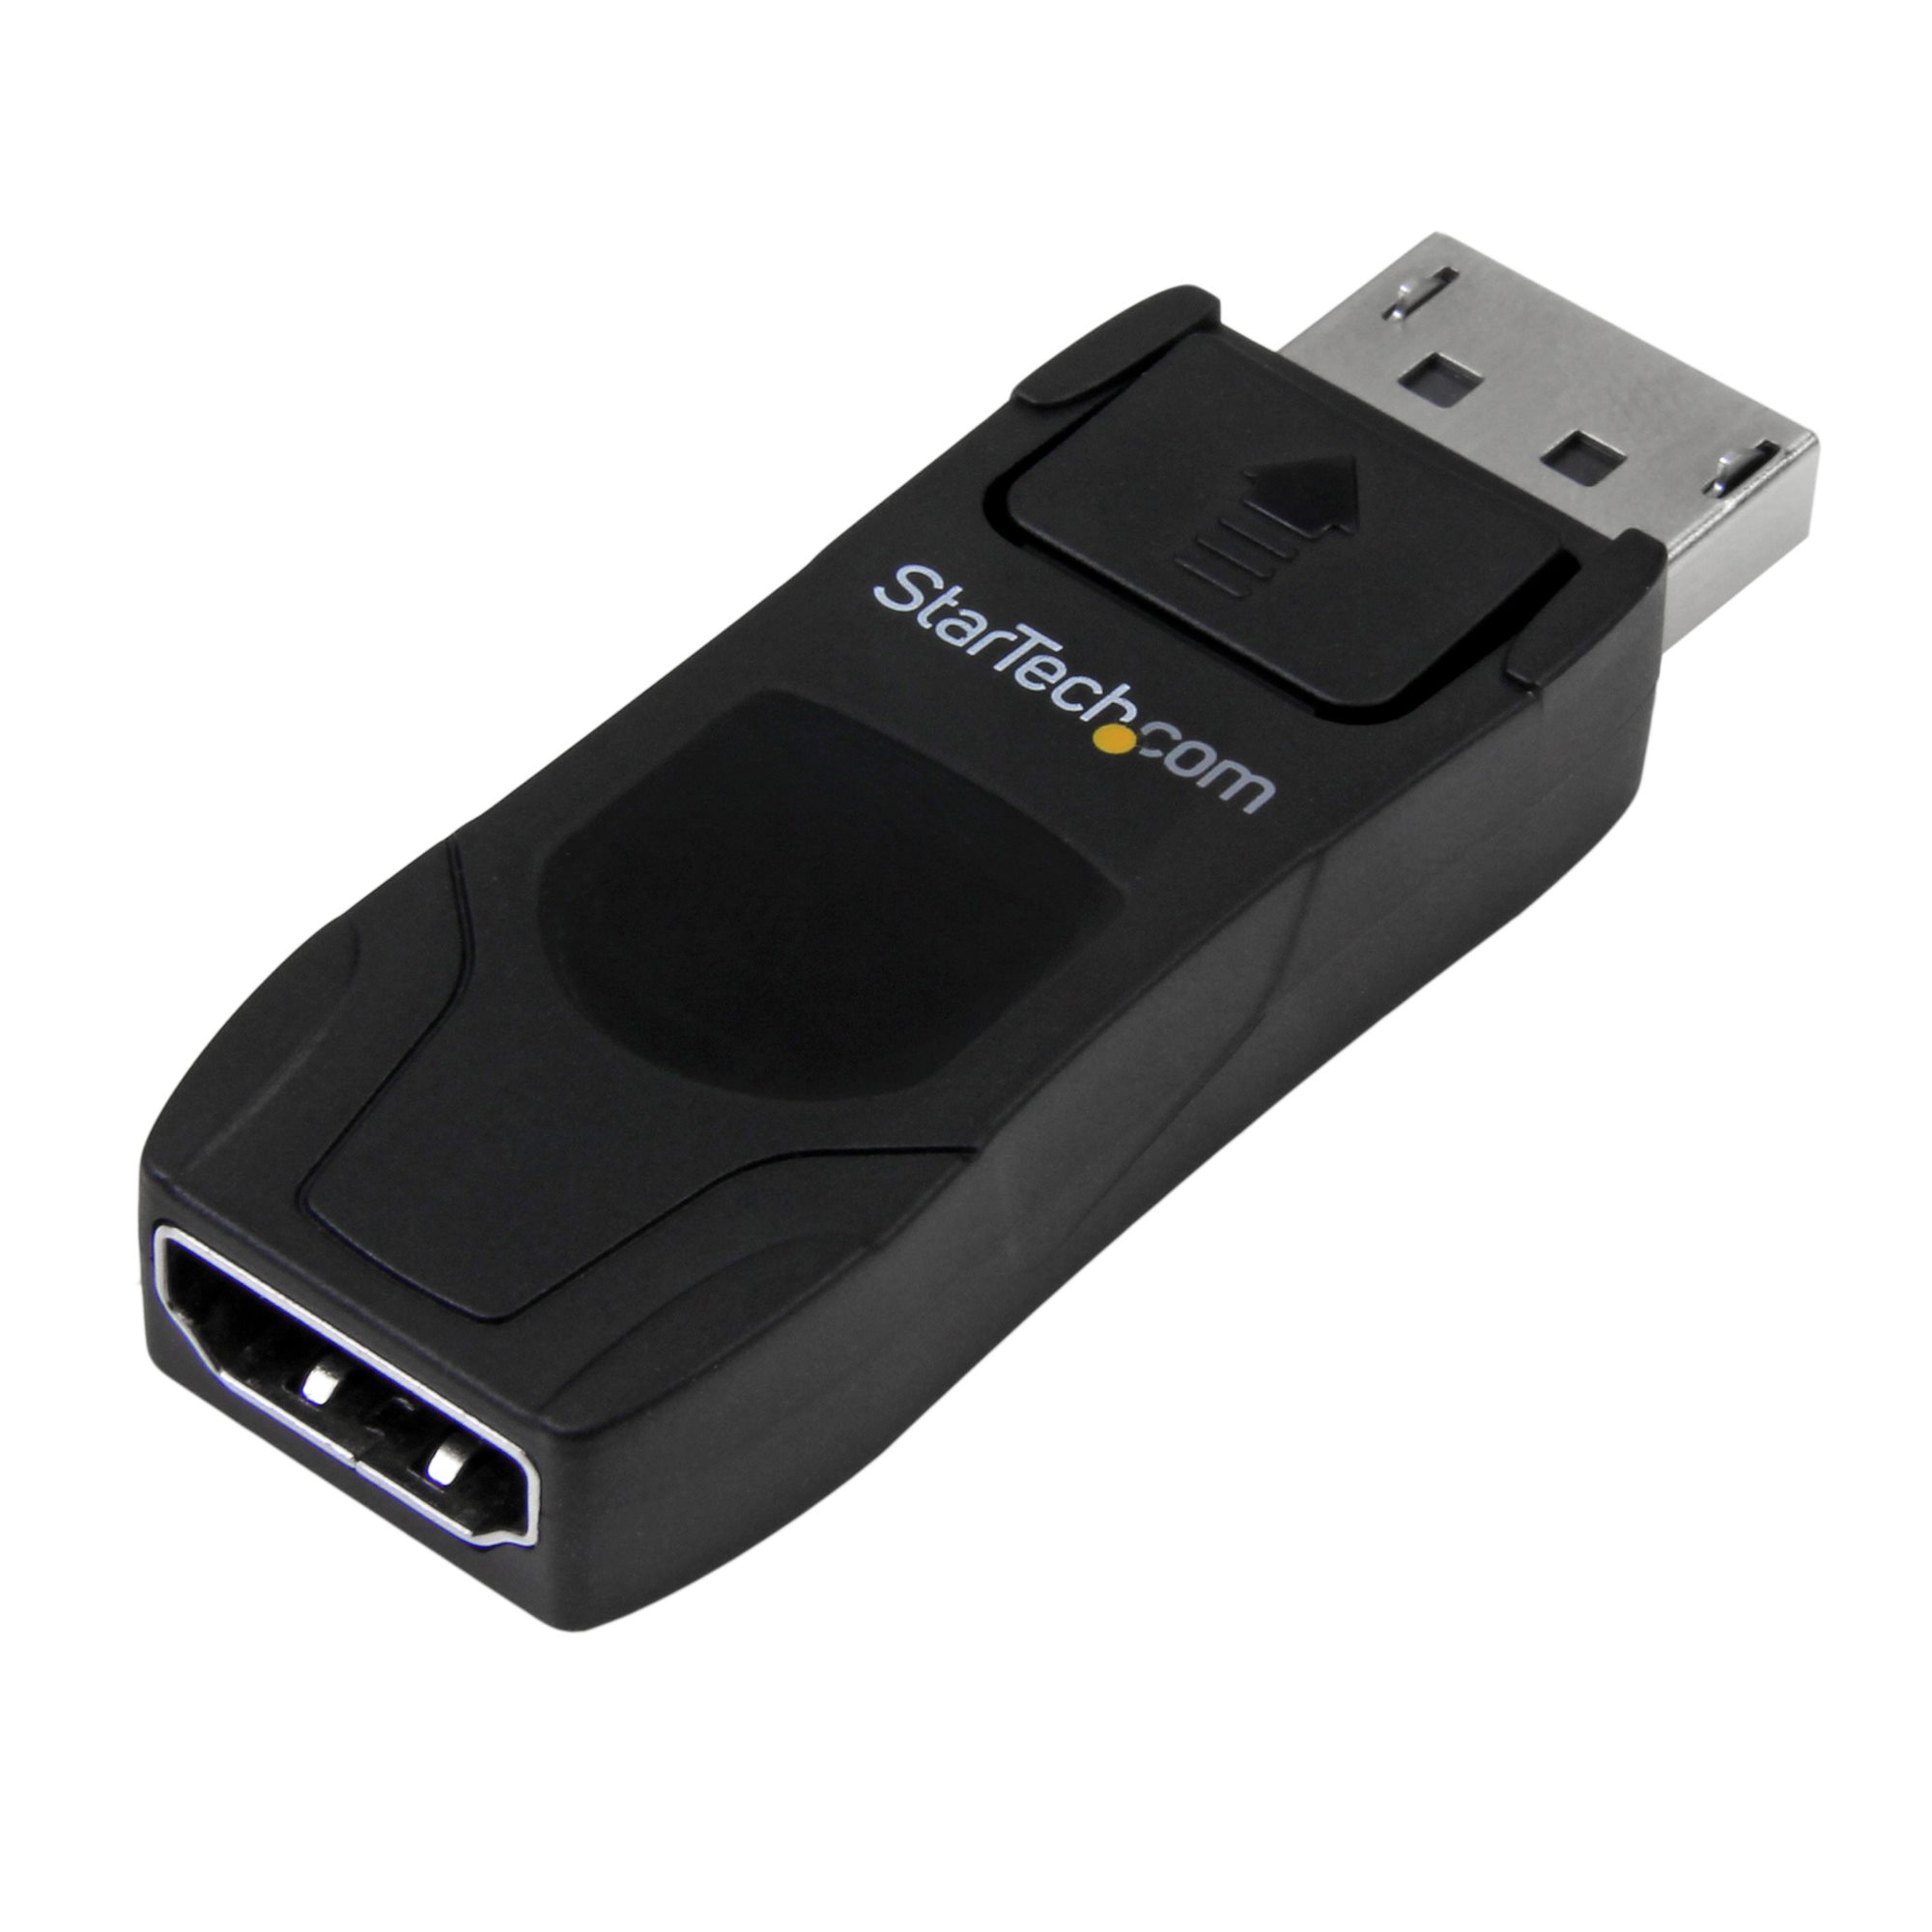 Undtagelse reductor Udelade DisplayPort to HDMI Adapter Converter 4K - DisplayPort & Mini DisplayPort  Adapters | StarTech.com